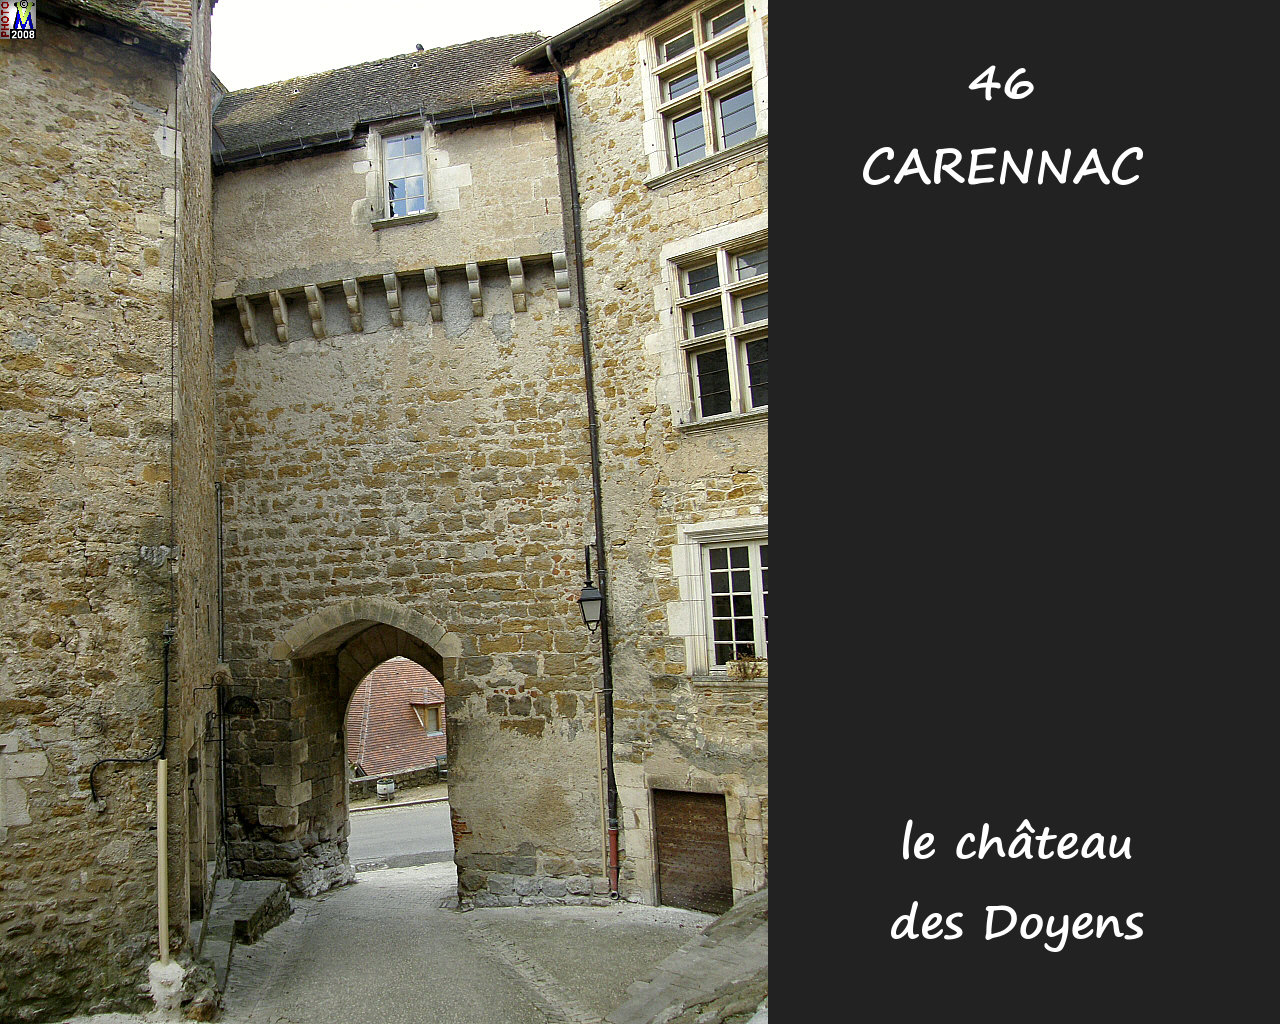 46CARENNAC_chateau_112.jpg